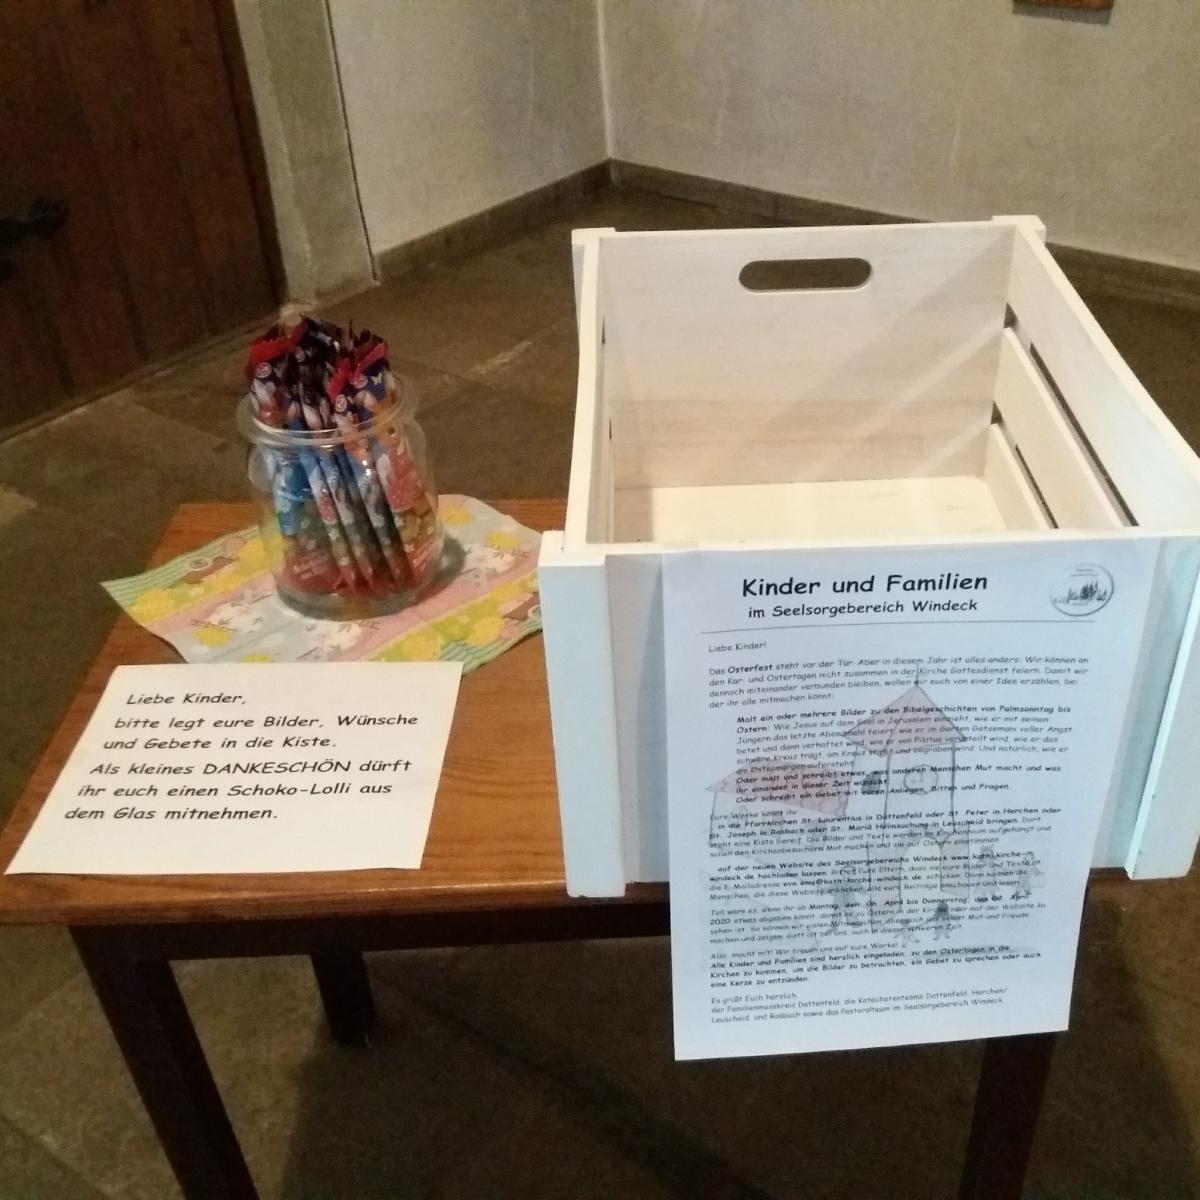 Liebe Kinder, die Kiste für eure Bilder, Wünsche und Gebete steht in der Kirche St. Laurentius (Dattenfeld) bereit und kann gefüllt werden.